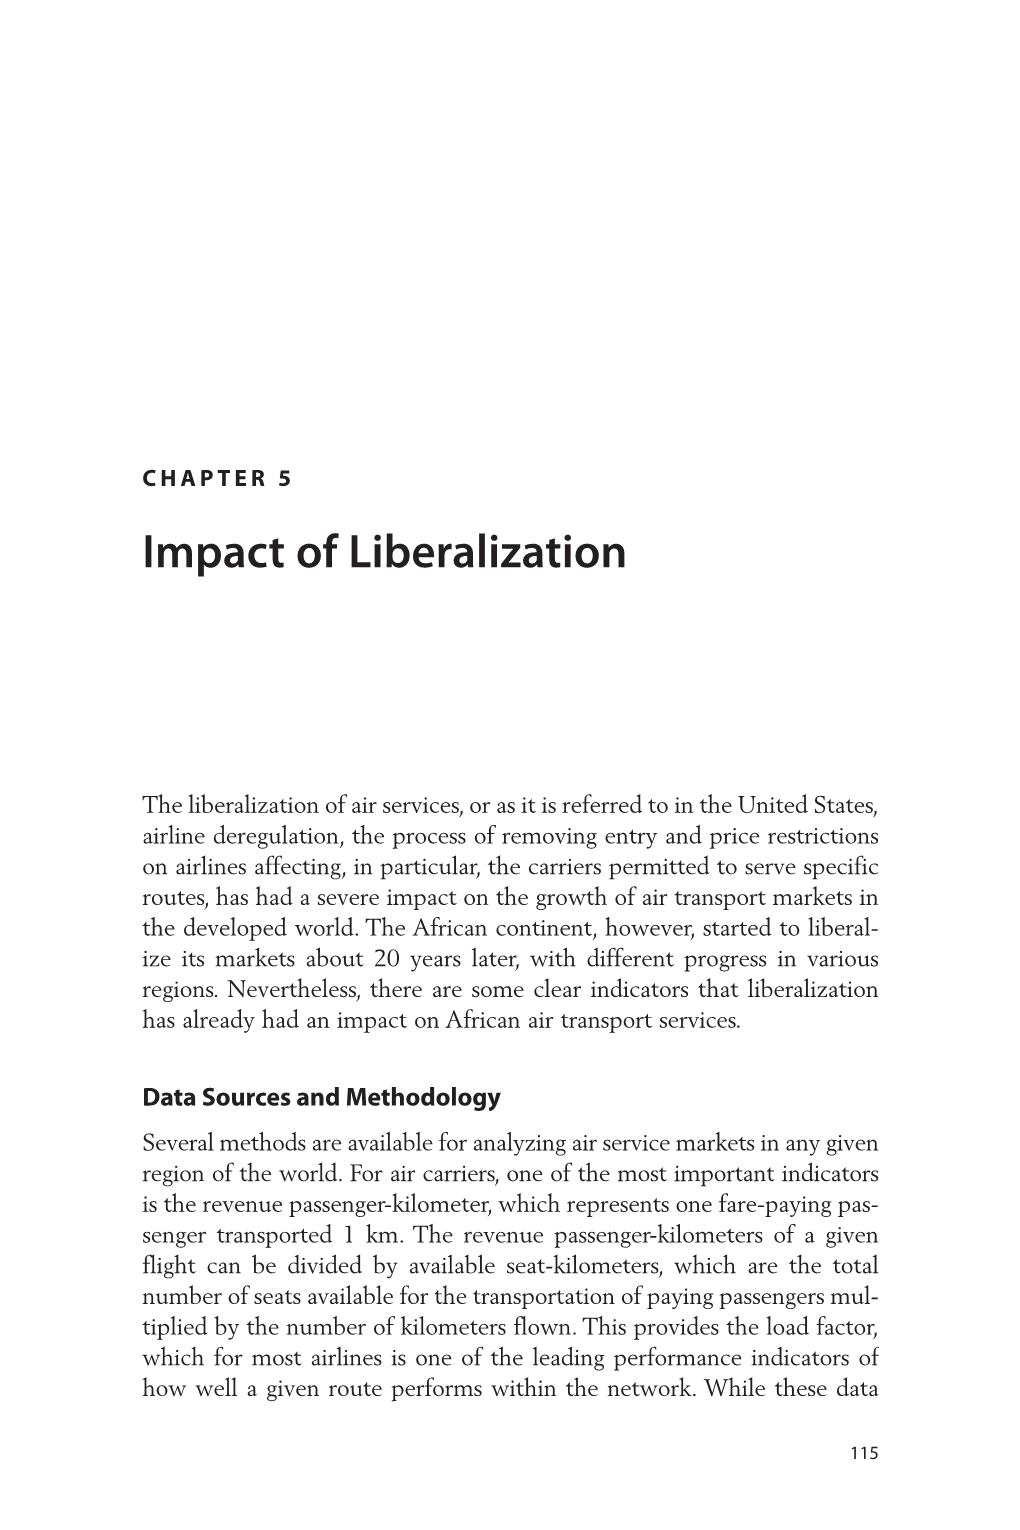 Impact of Liberalization